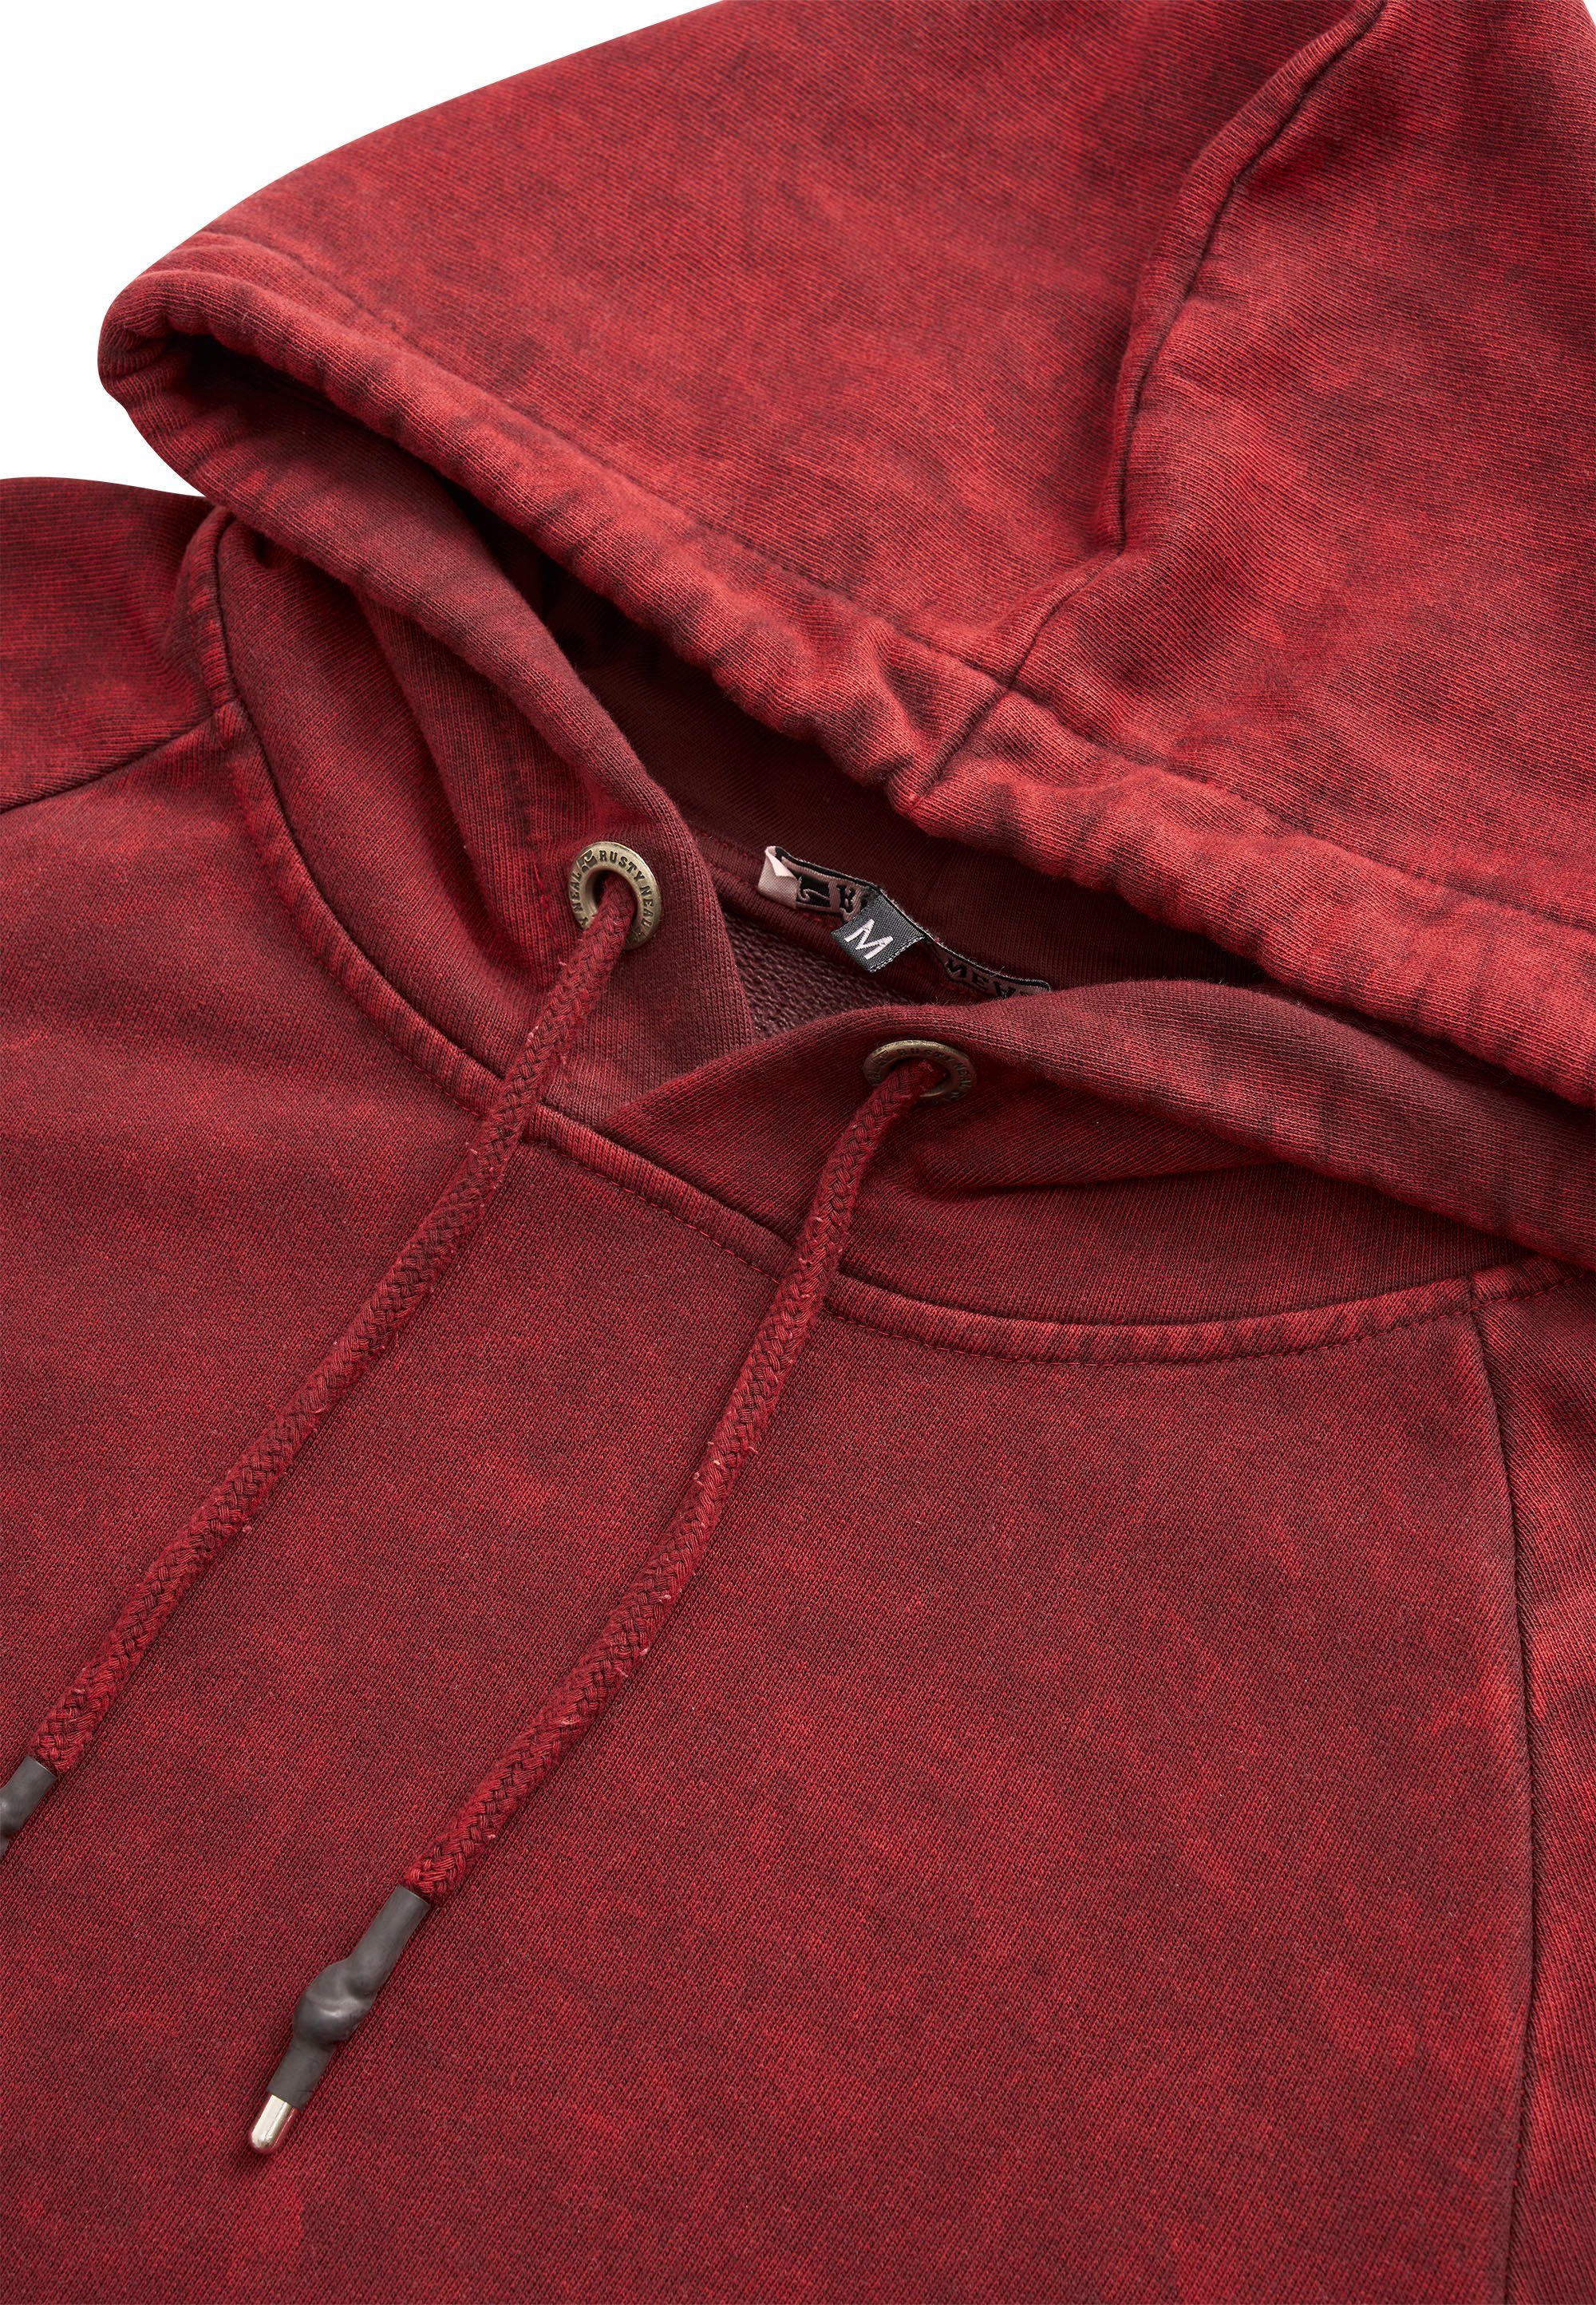 Rusty in Neal Kapuzensweatshirt verwaschenem Design rot